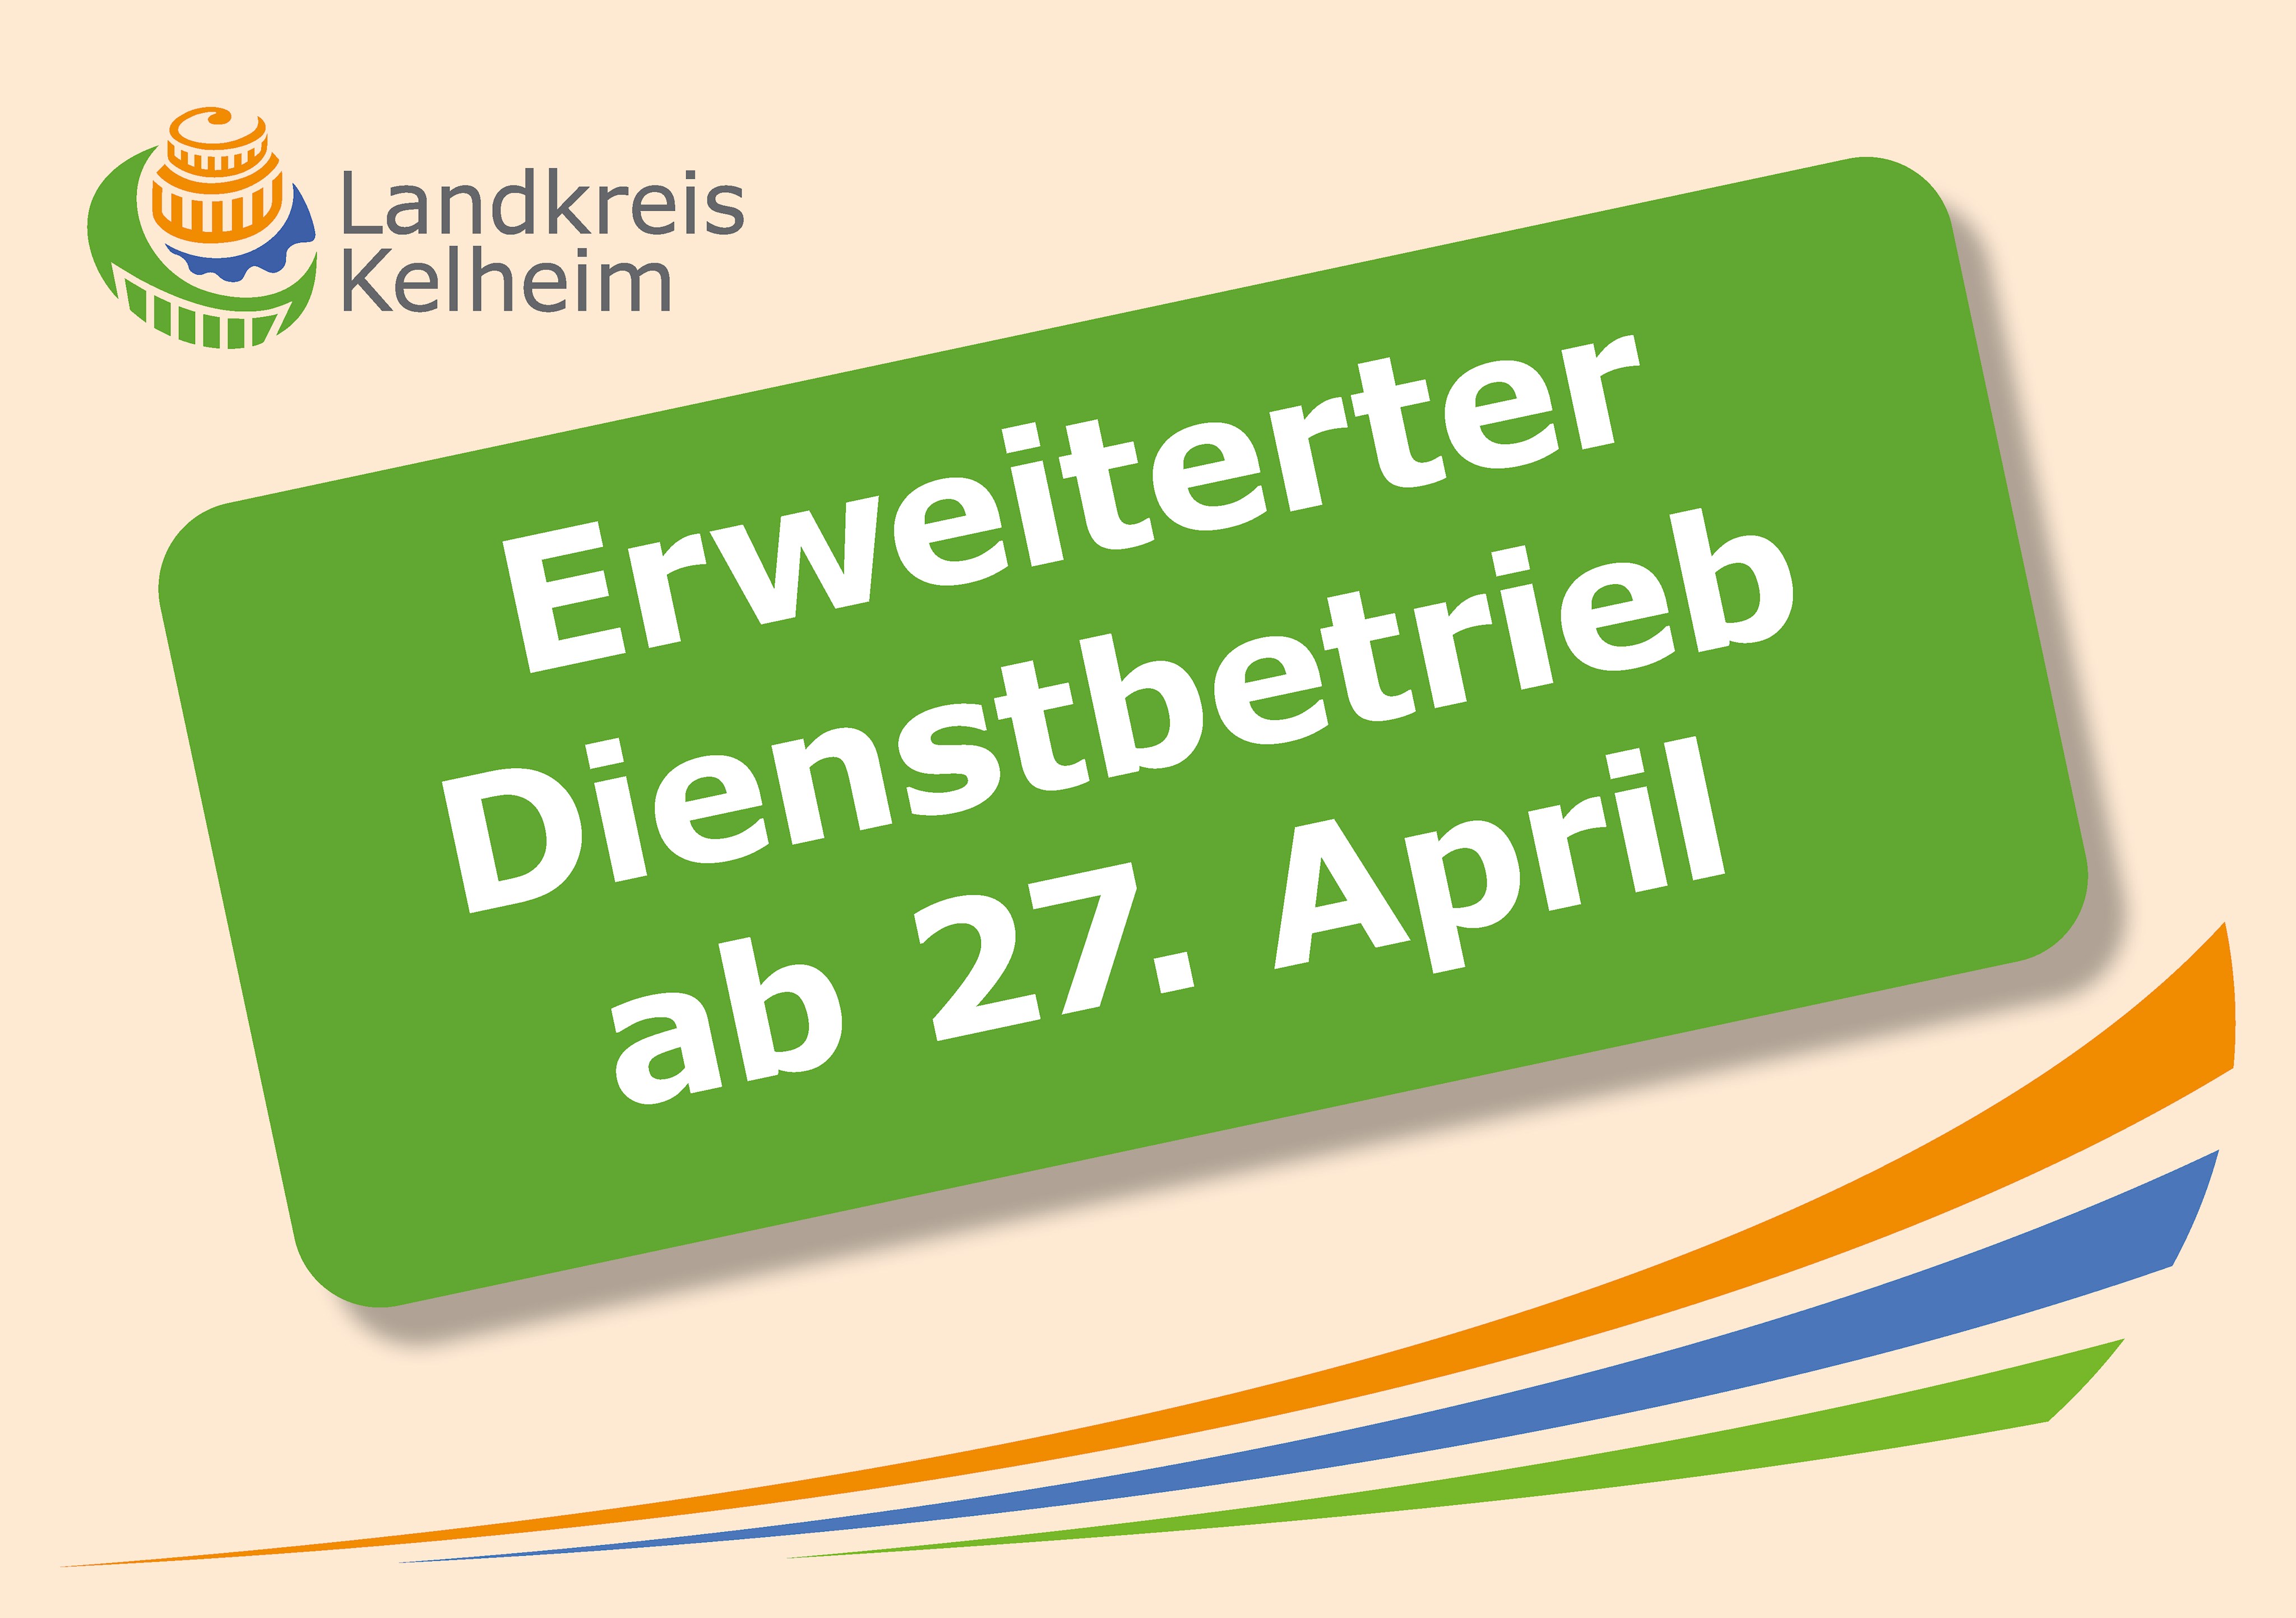 Erweiterter Dienstbetrieb am Landratsamt ab 27.04.2020: Parteiverkehr mit Terminvereinbarung möglich